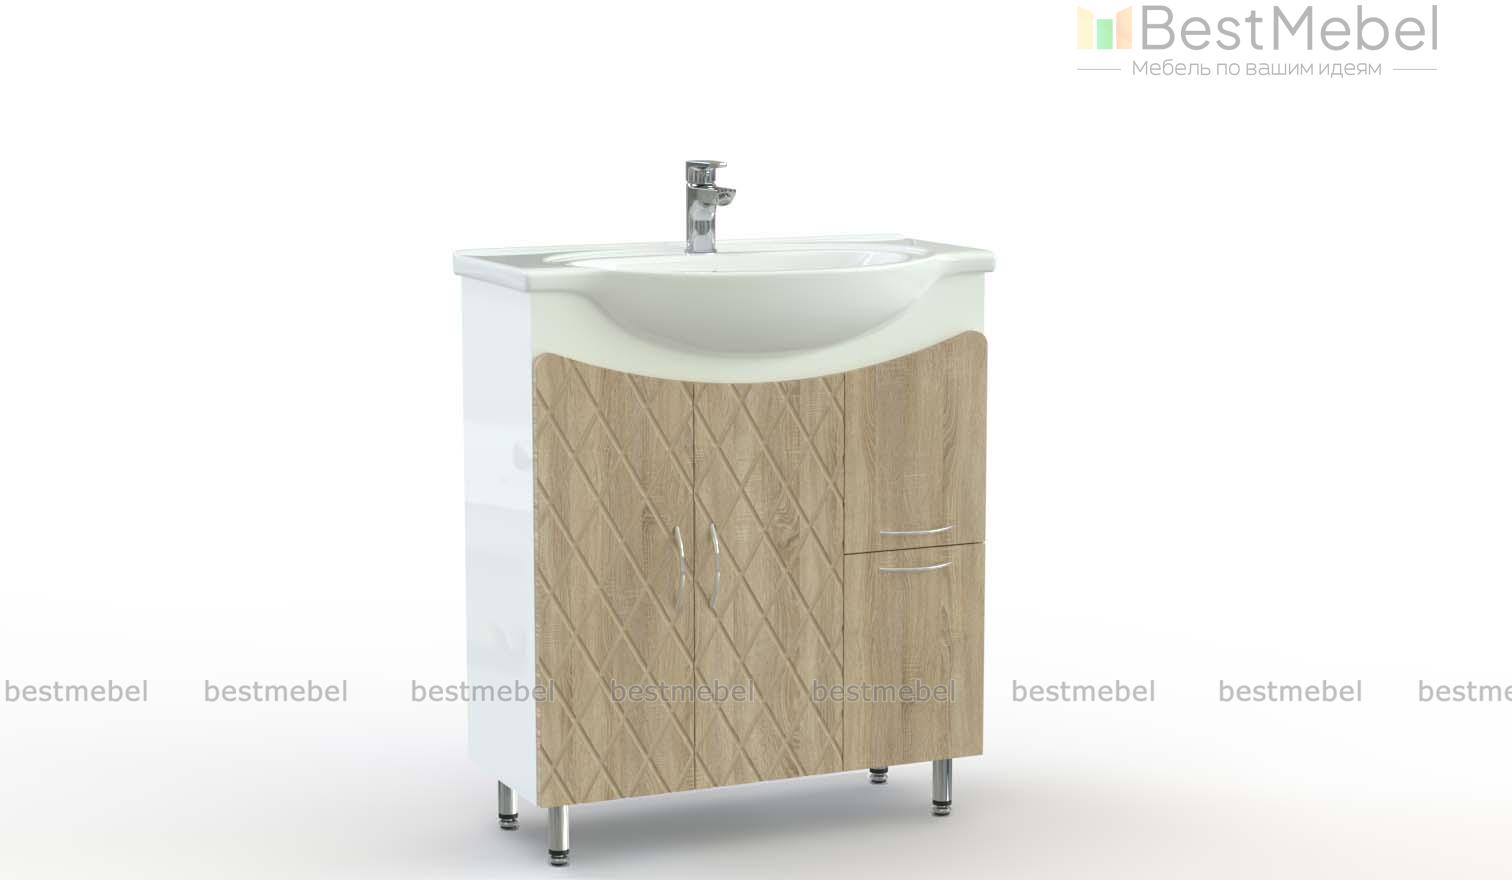 Тумба для ванной комнаты Нео 1 - 15500 руб в Ижевске с бесплатной  доставкой, любой цвет и размер